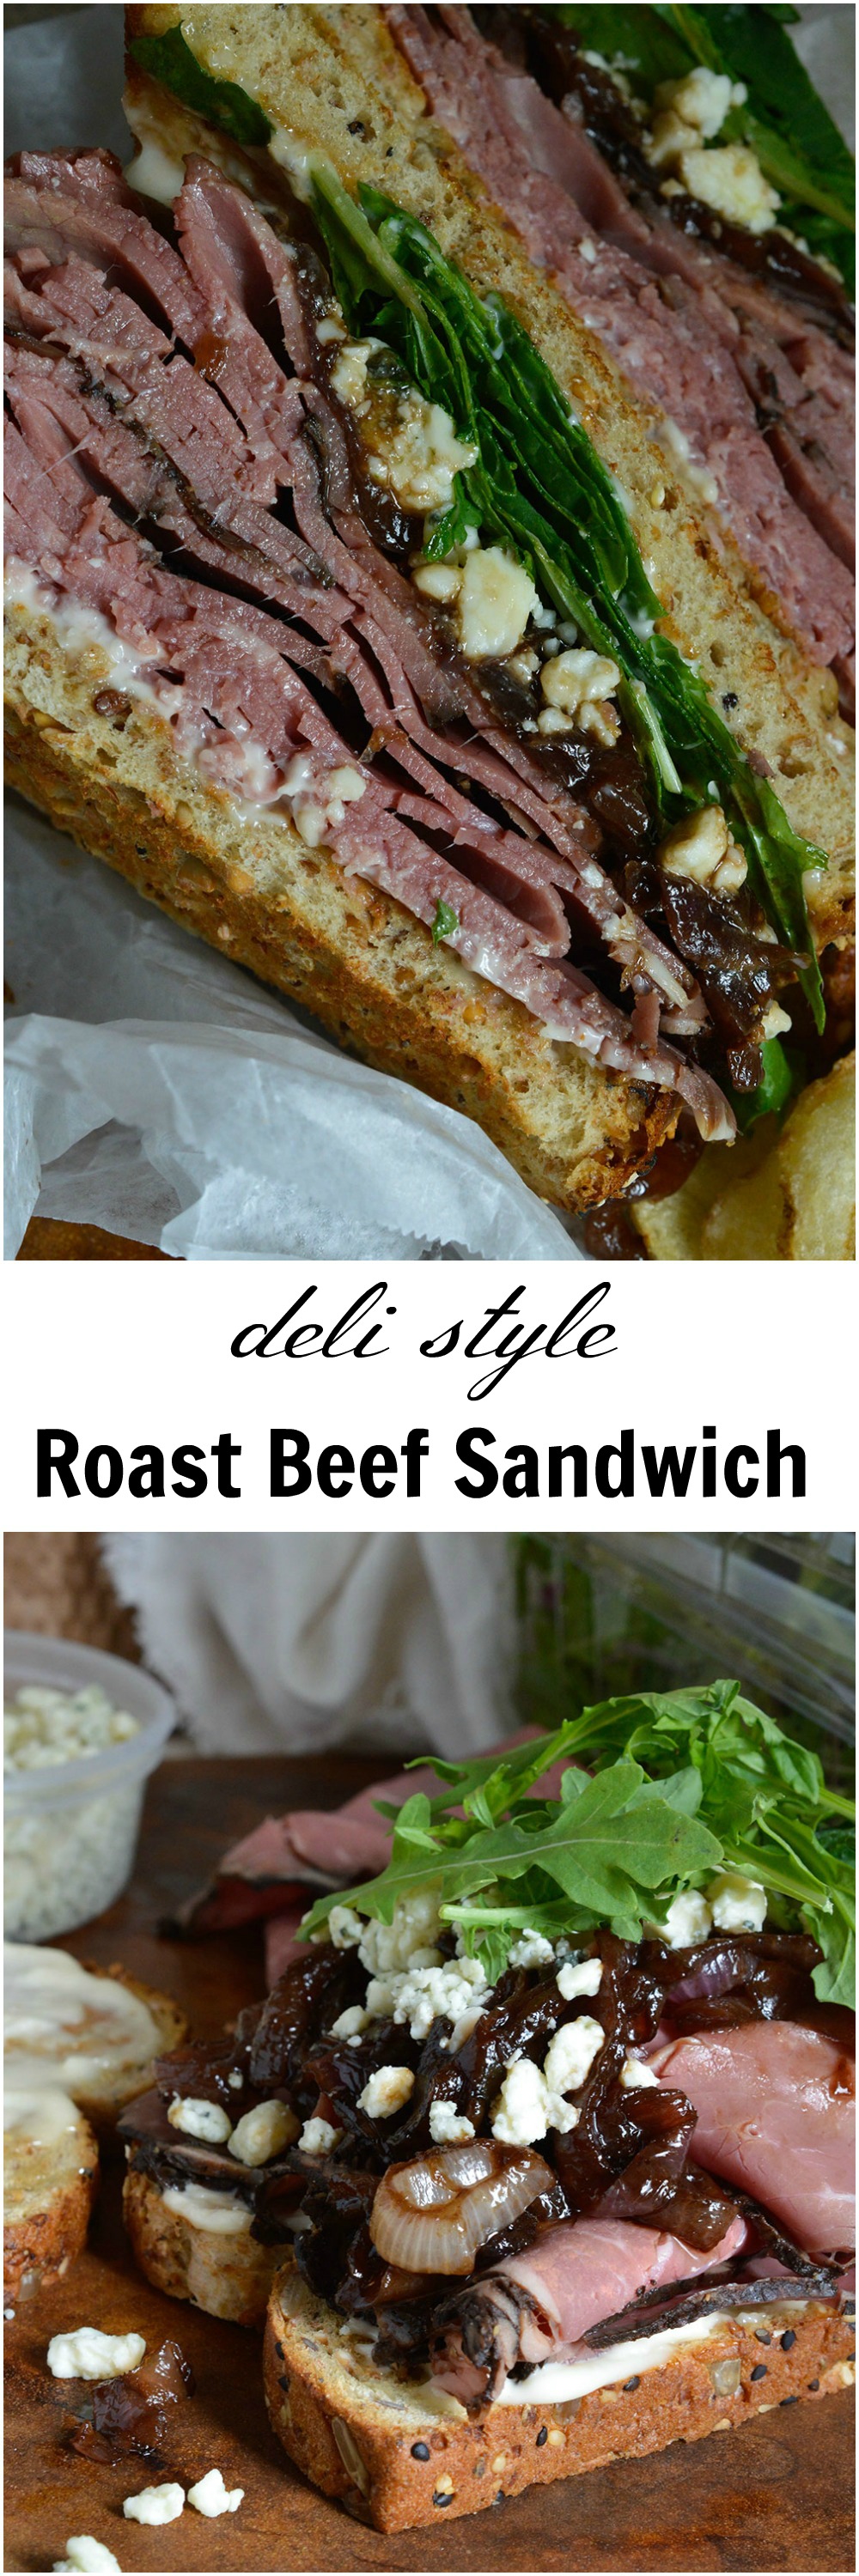 Deli Style Roast Beef Sandwich - WonkyWonderful